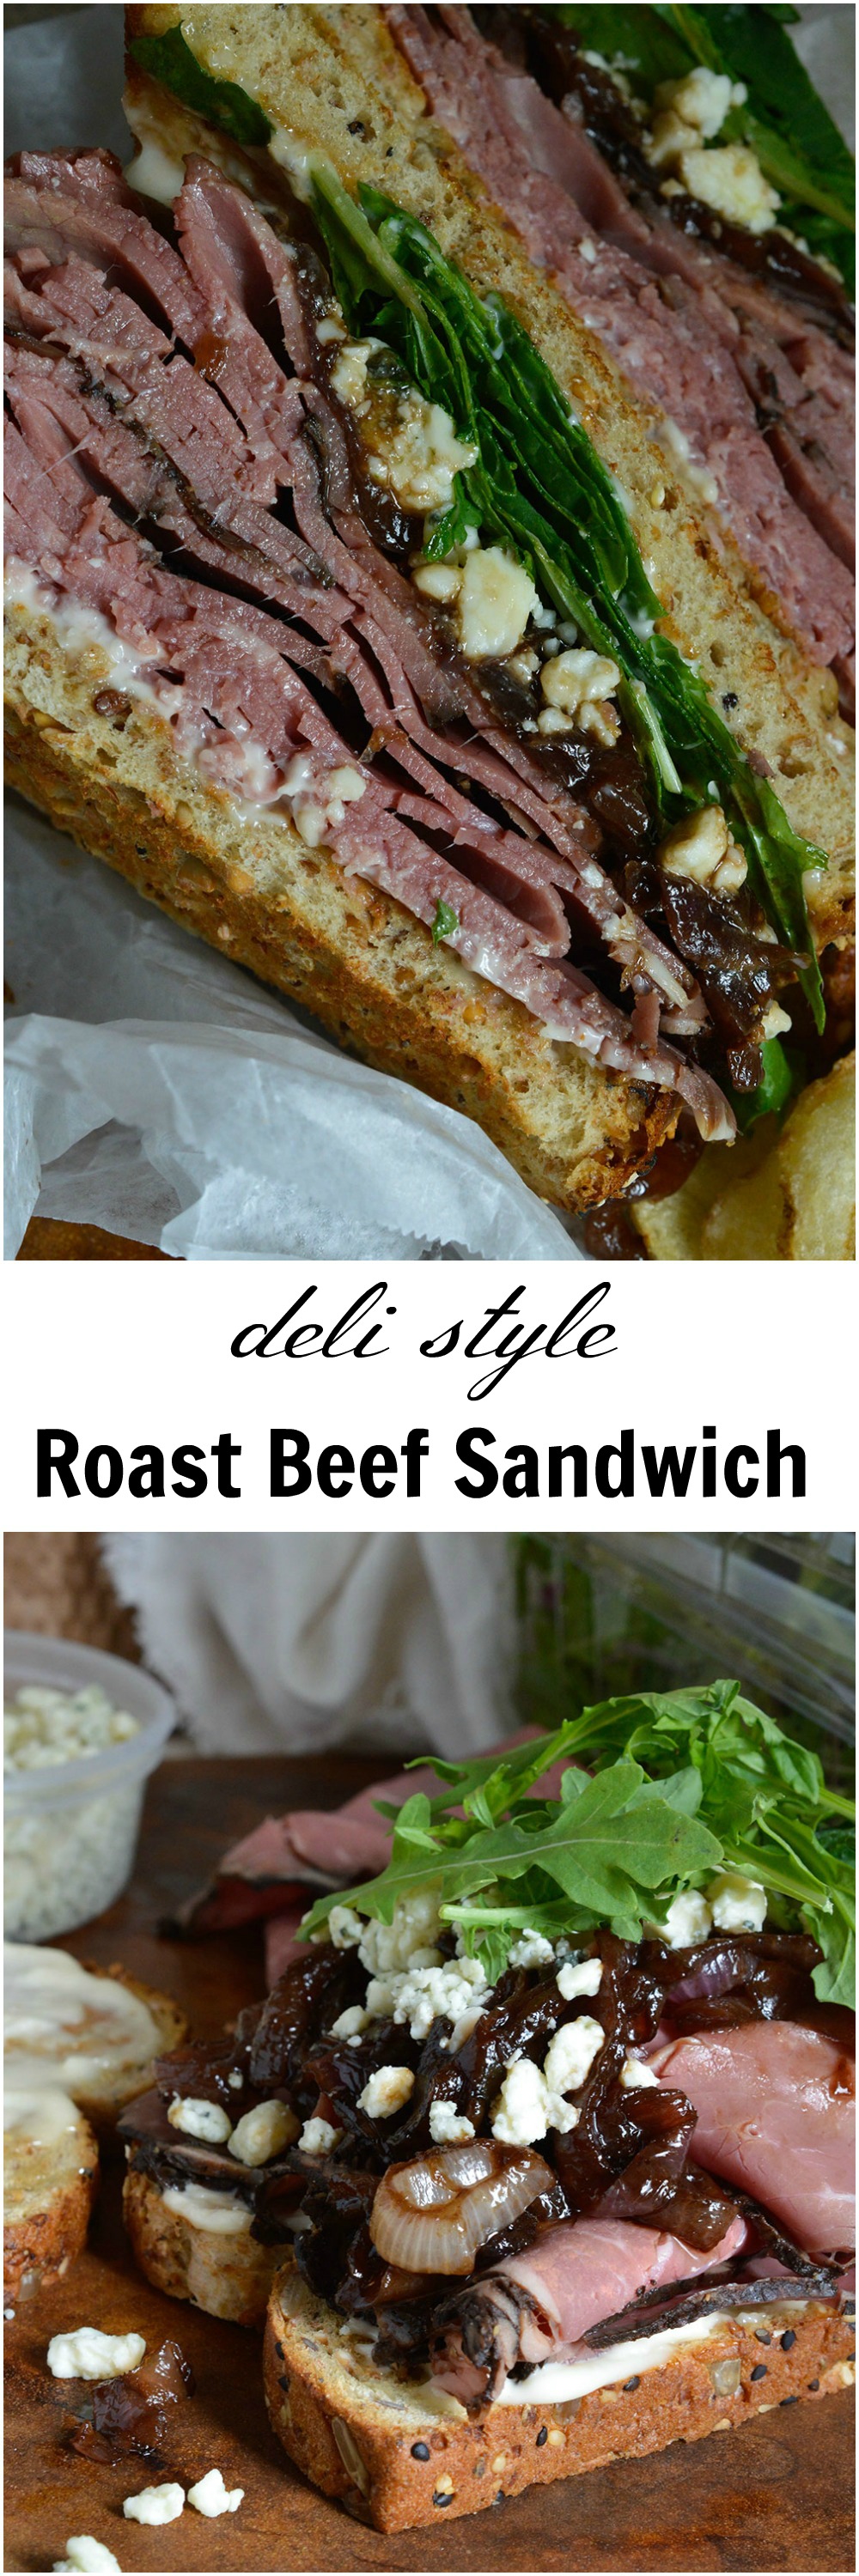 Deli Style Roast Beef Sandwich - WonkyWonderful